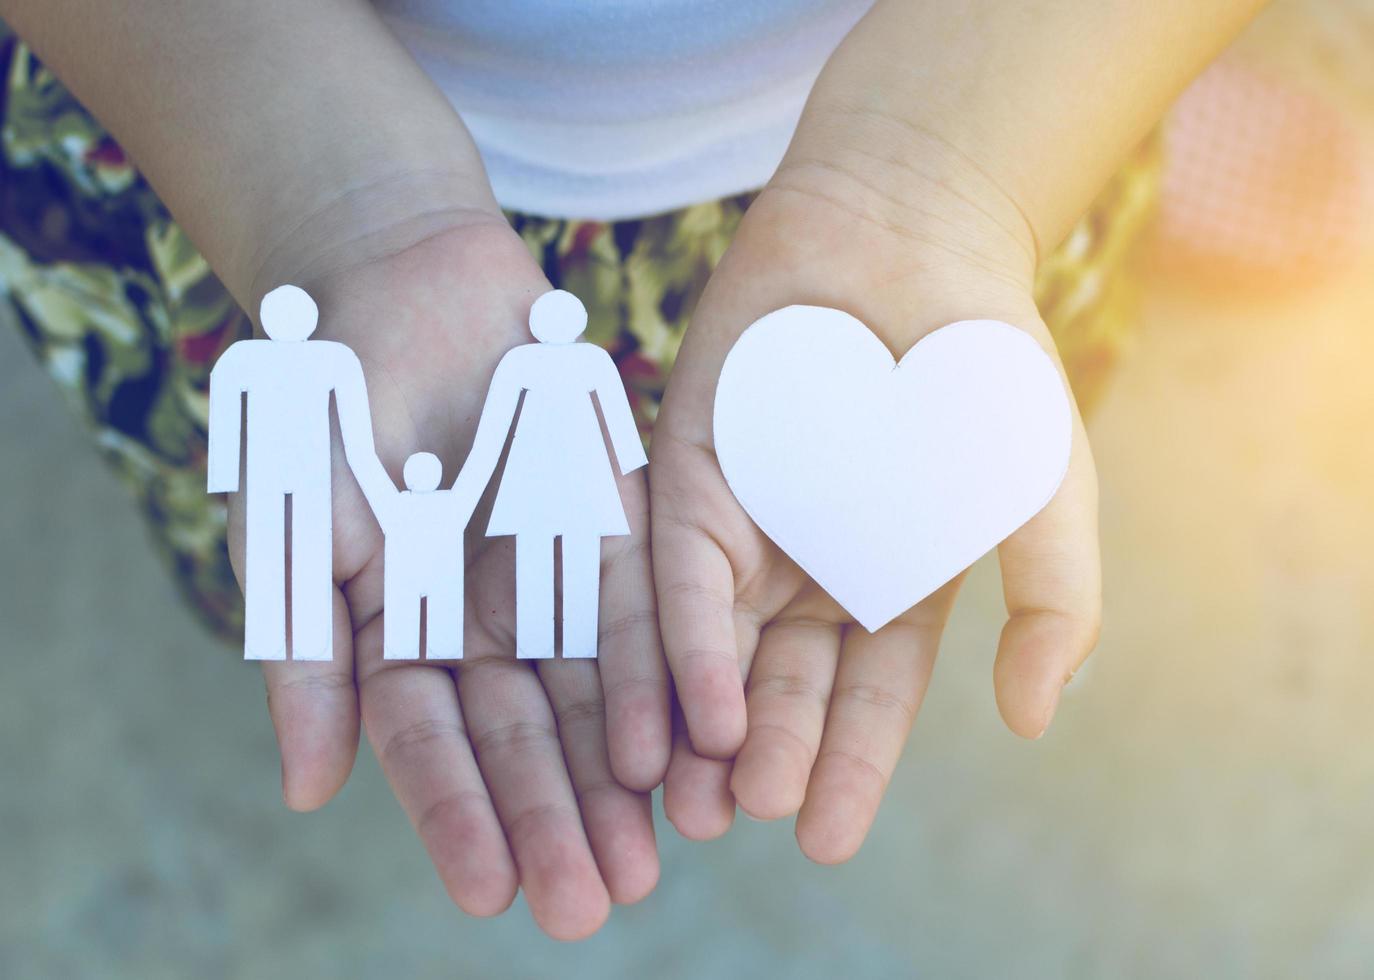 manos de niños sosteniendo un pequeño modelo de corazón y familia, concepto de familia foto